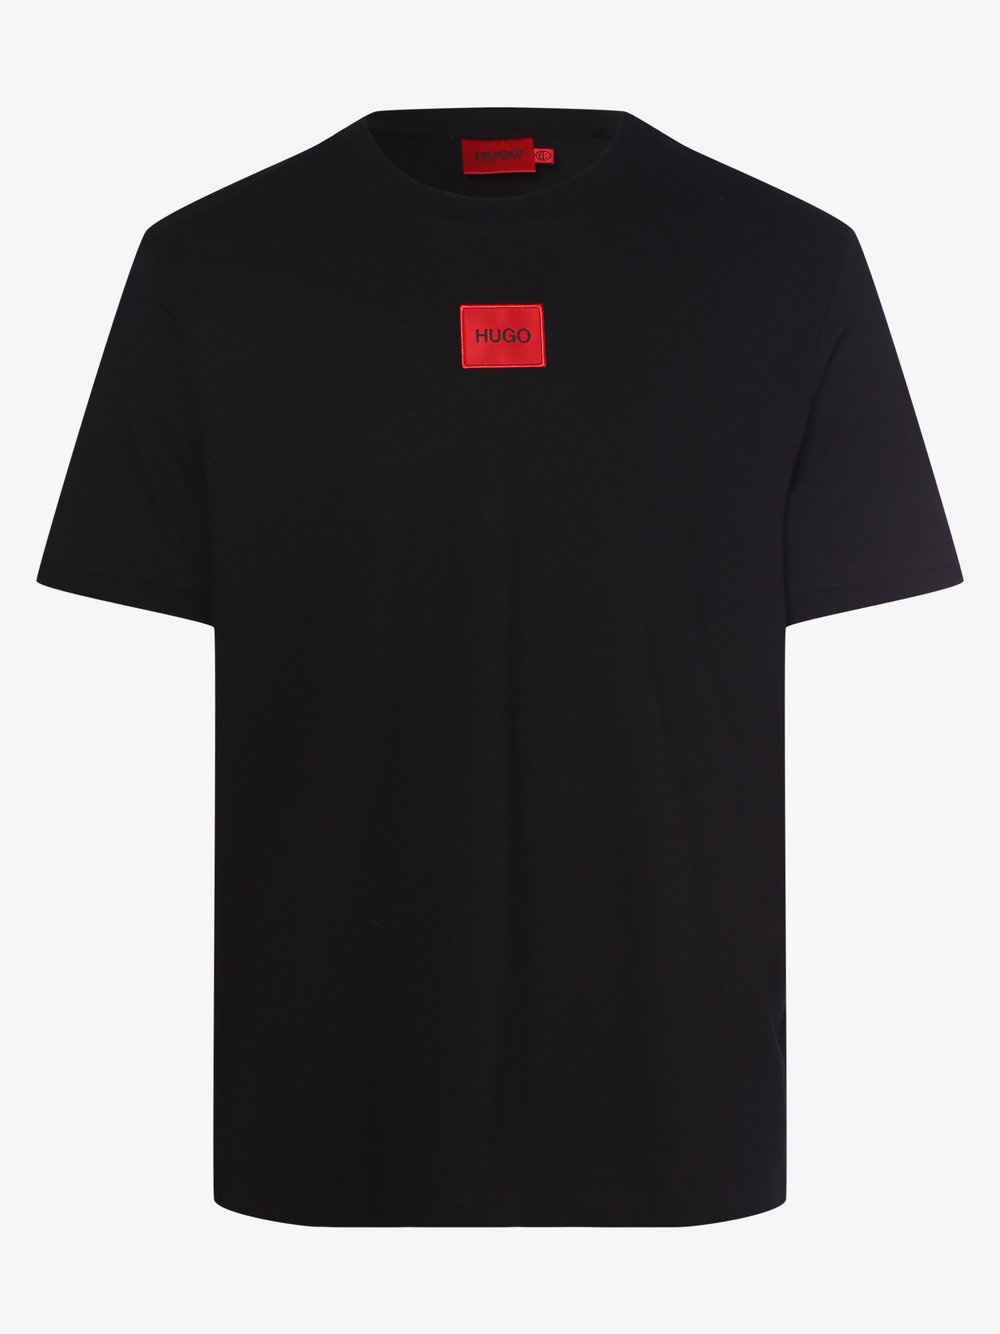 HUGO - T-shirt męski – Diragolino212, czarny